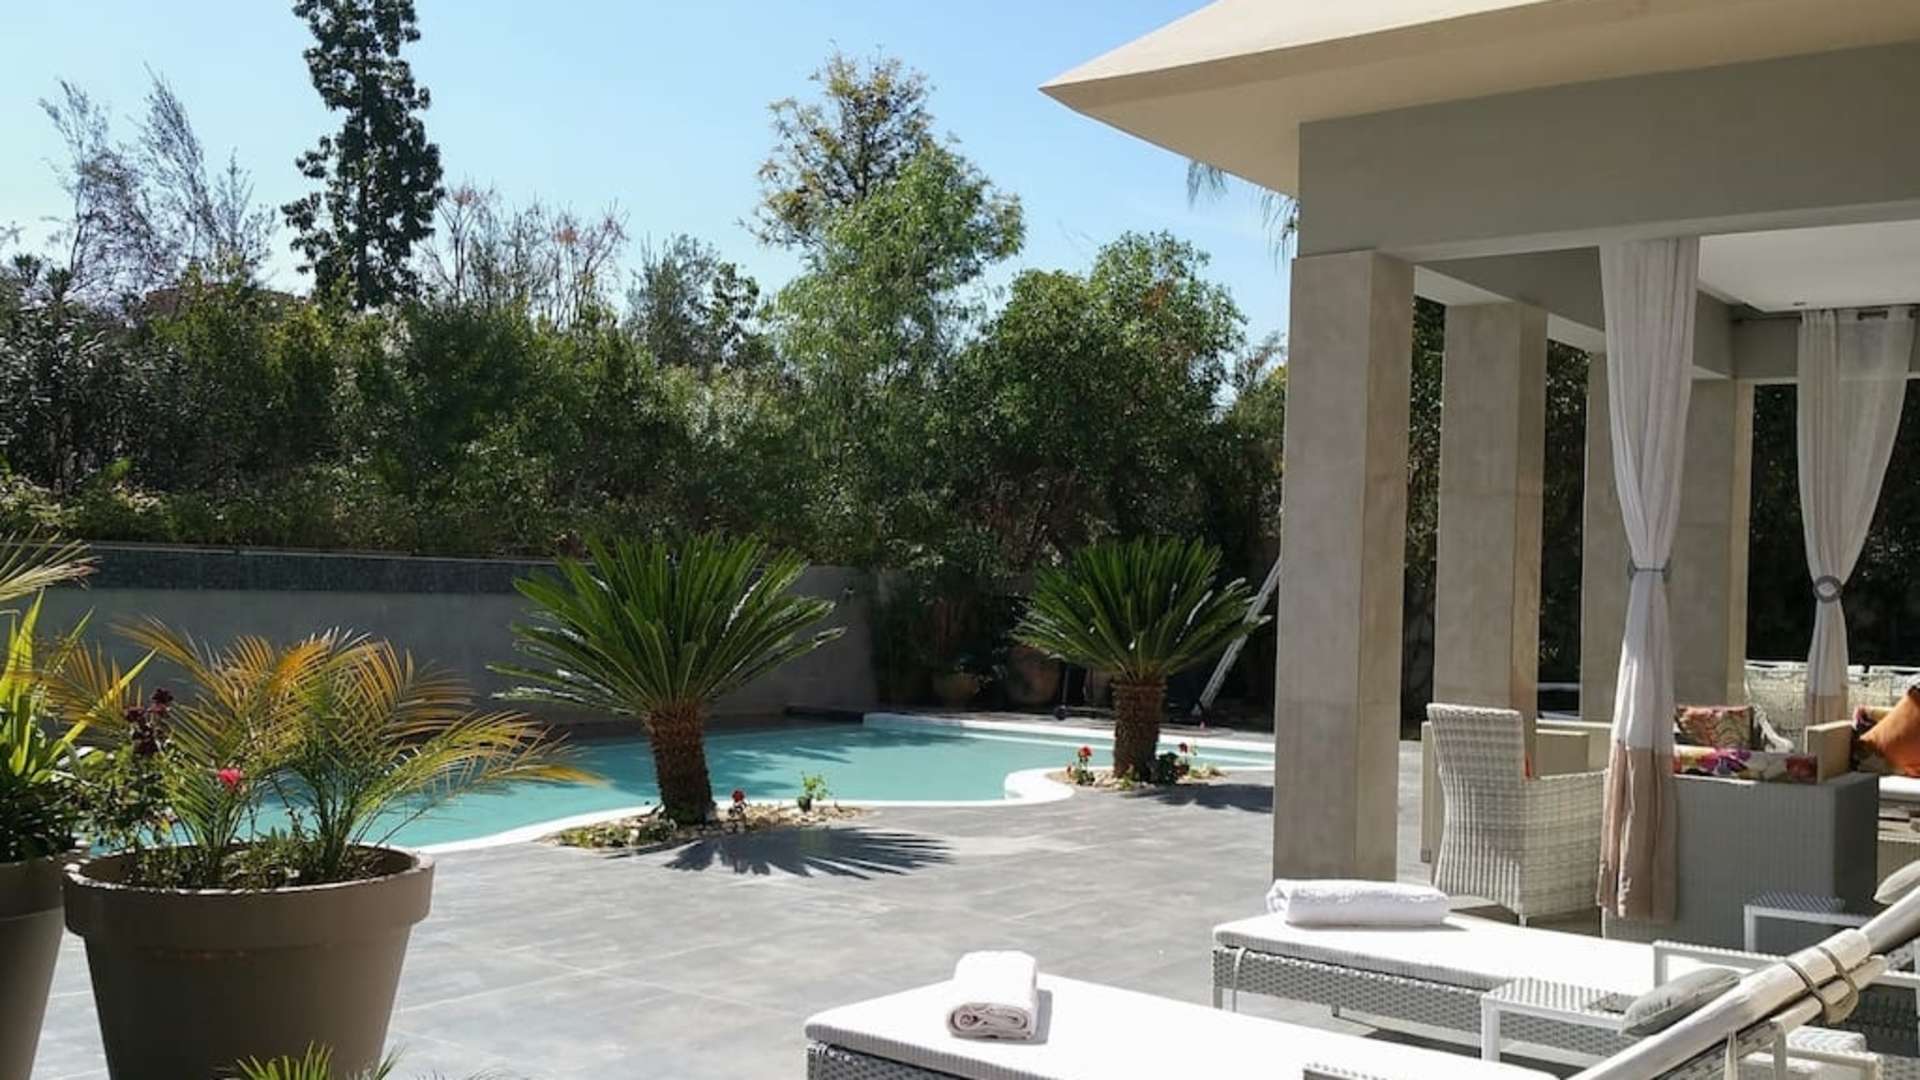 Location de vacances,Villa,Villa 5 chambres dans le golf d' Amelkis - Piscine Privée à 10min du centre de Marrakech,Marrakech,Amelkis Golf Resort